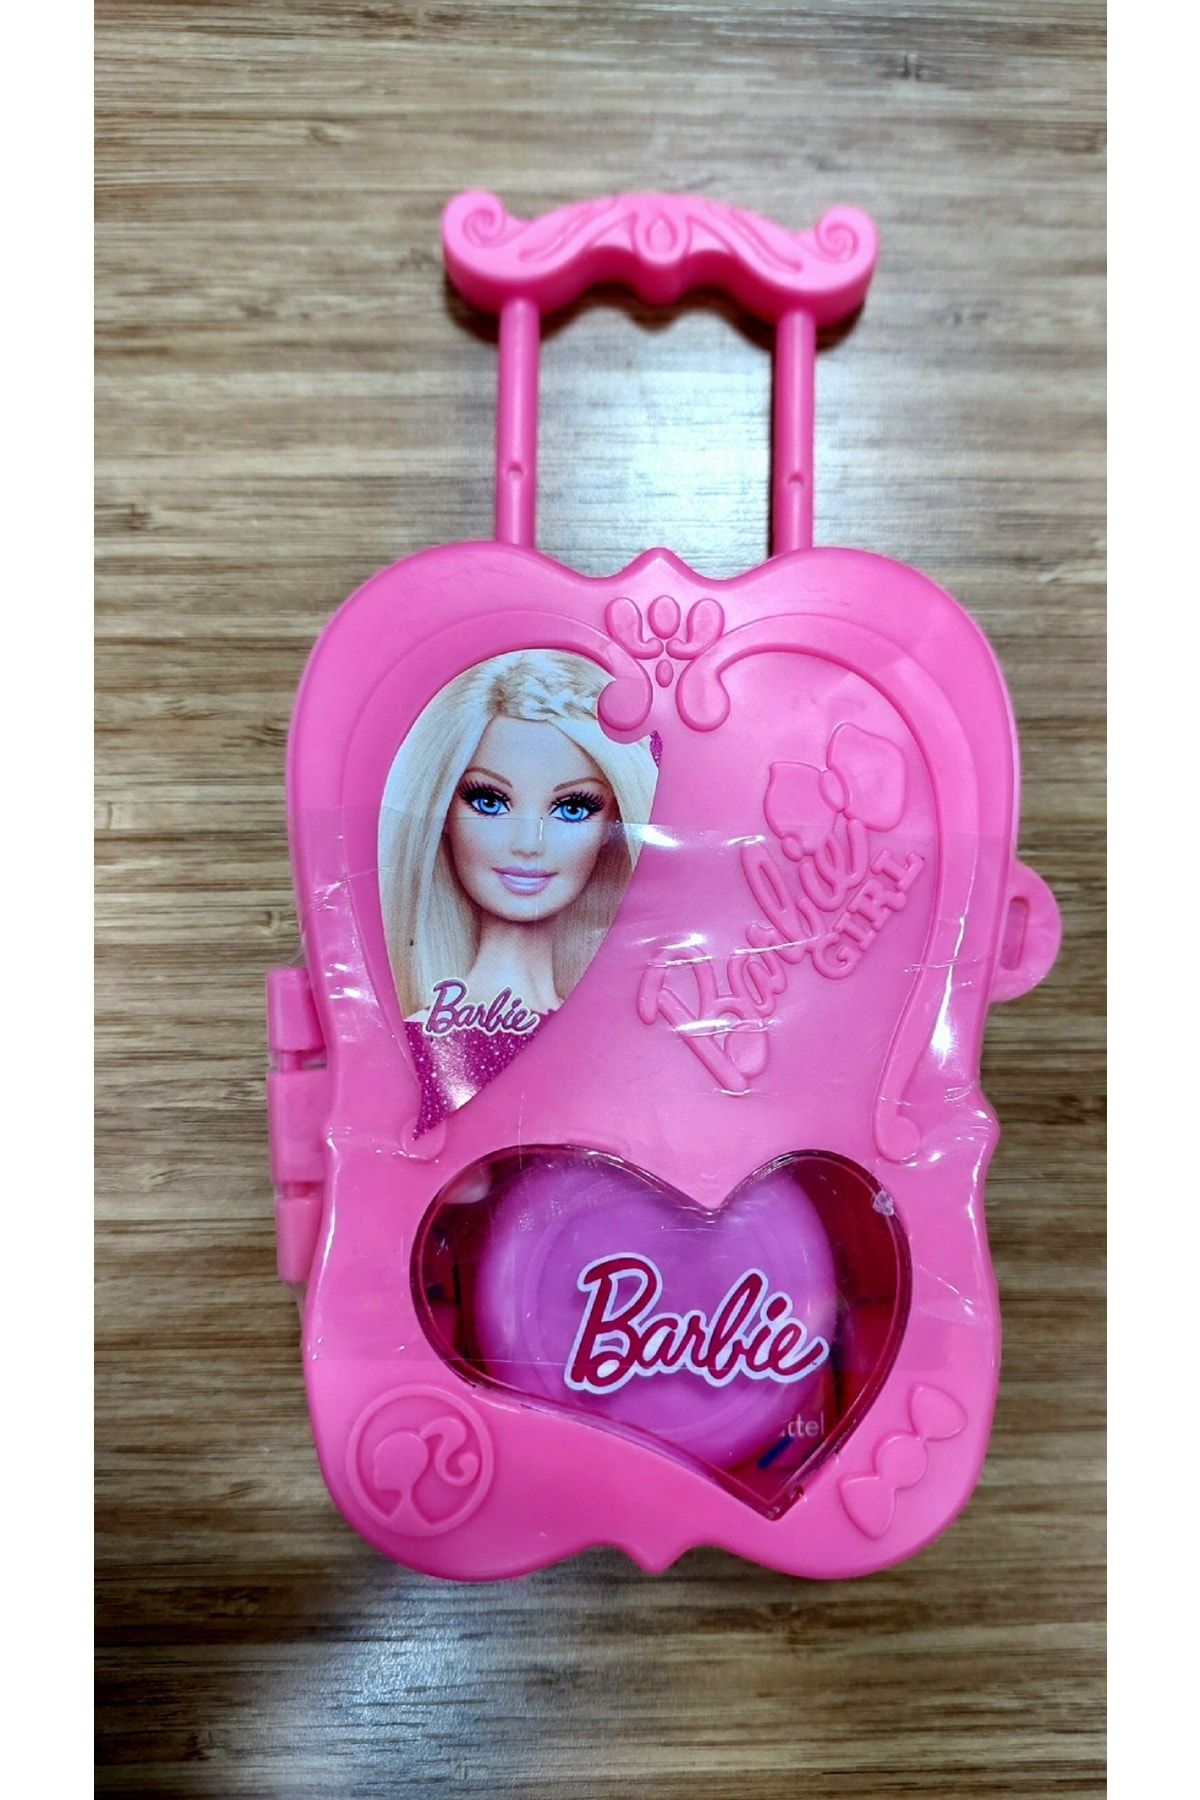 Barbie Bavul Trolley Candy 1 Adet